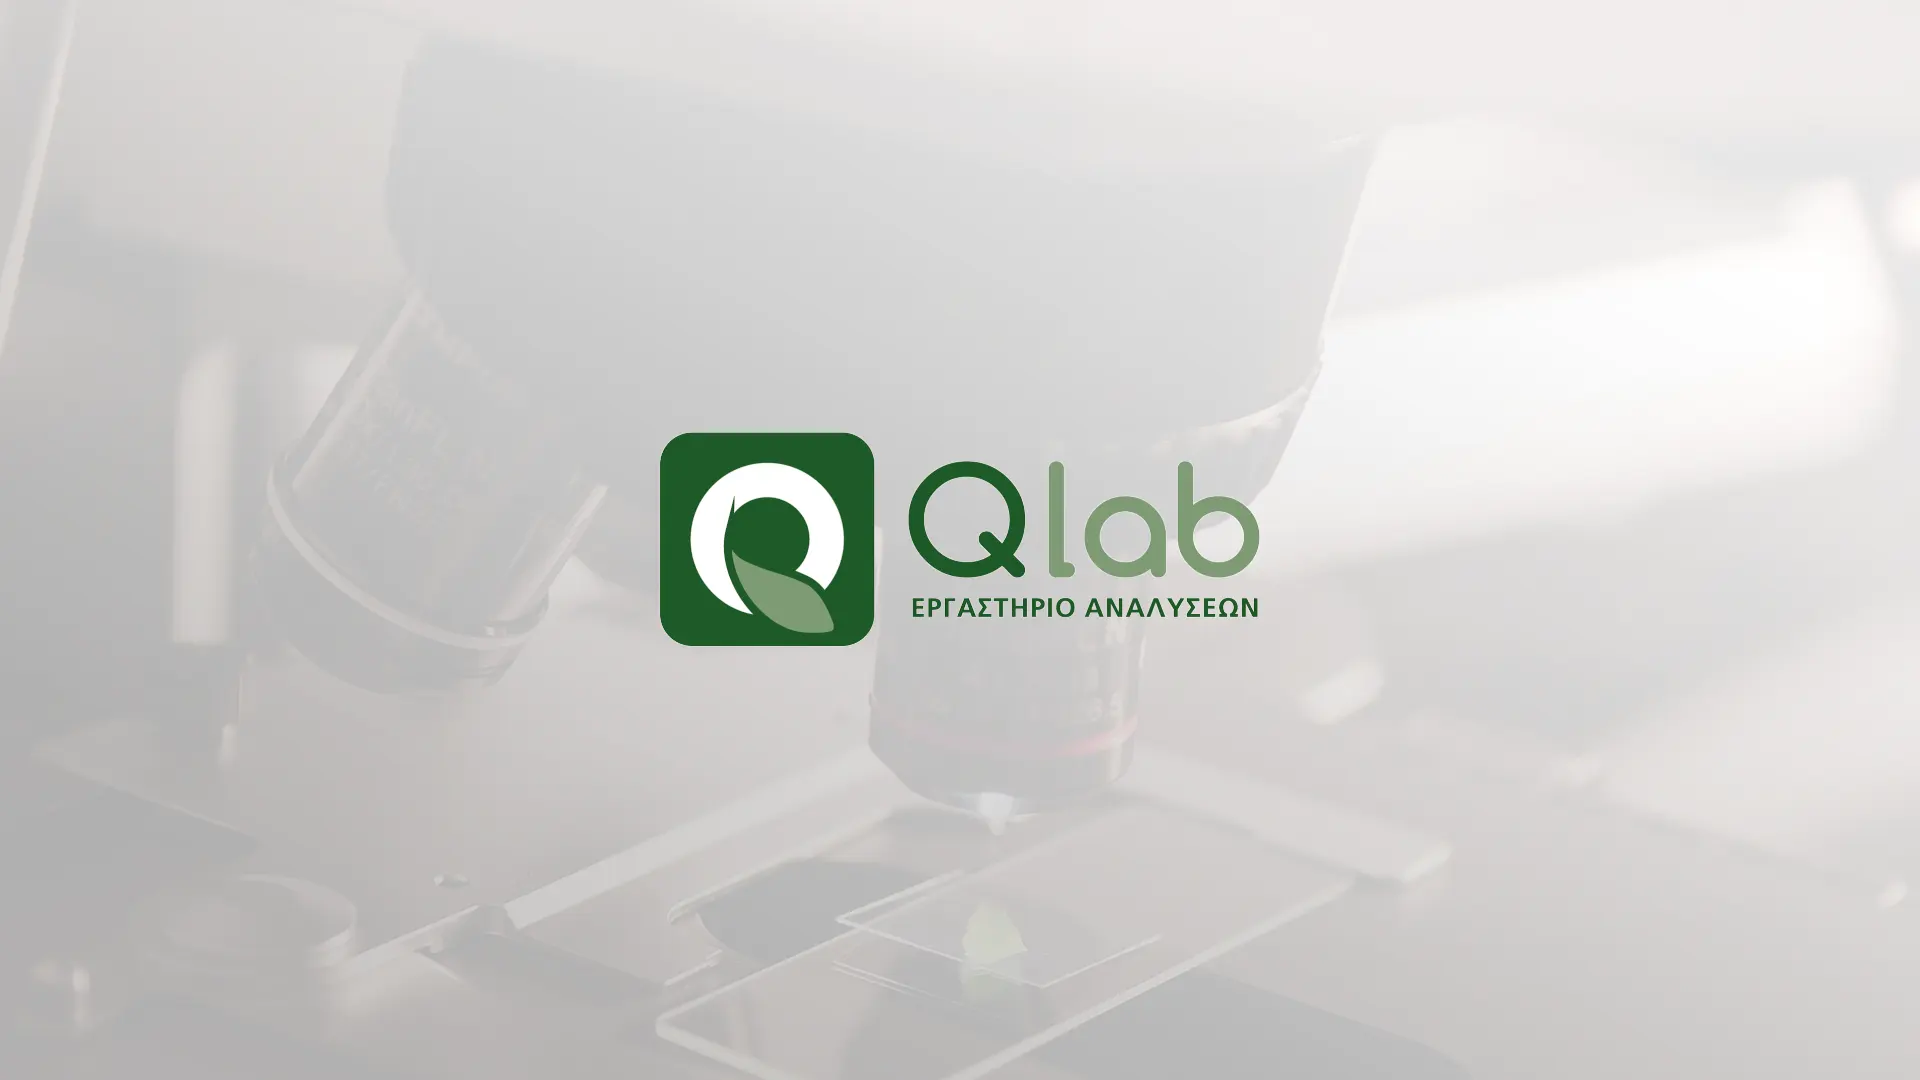 Γνωρίστε την ερευνητική μας ομάδα: Qlab